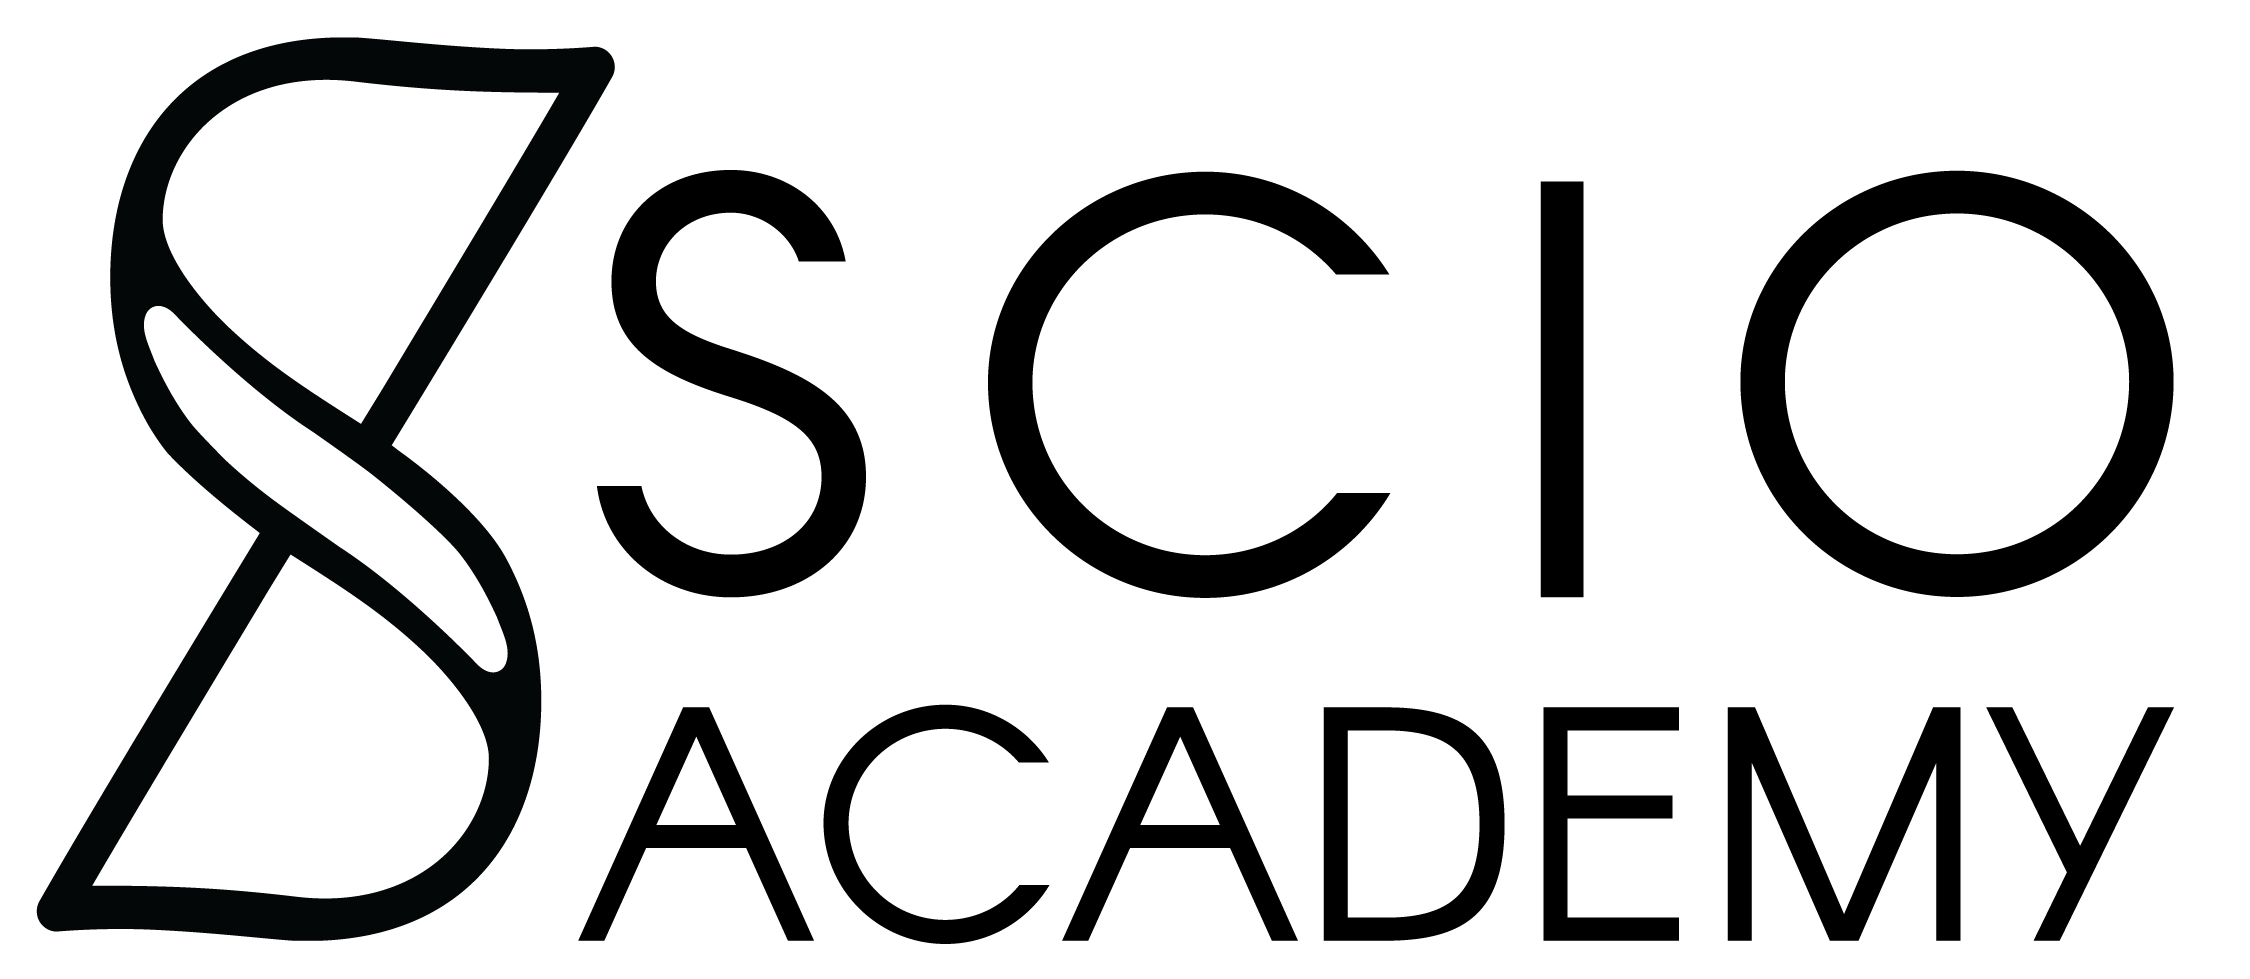 Scio Logo - scio logo - Scio Academy